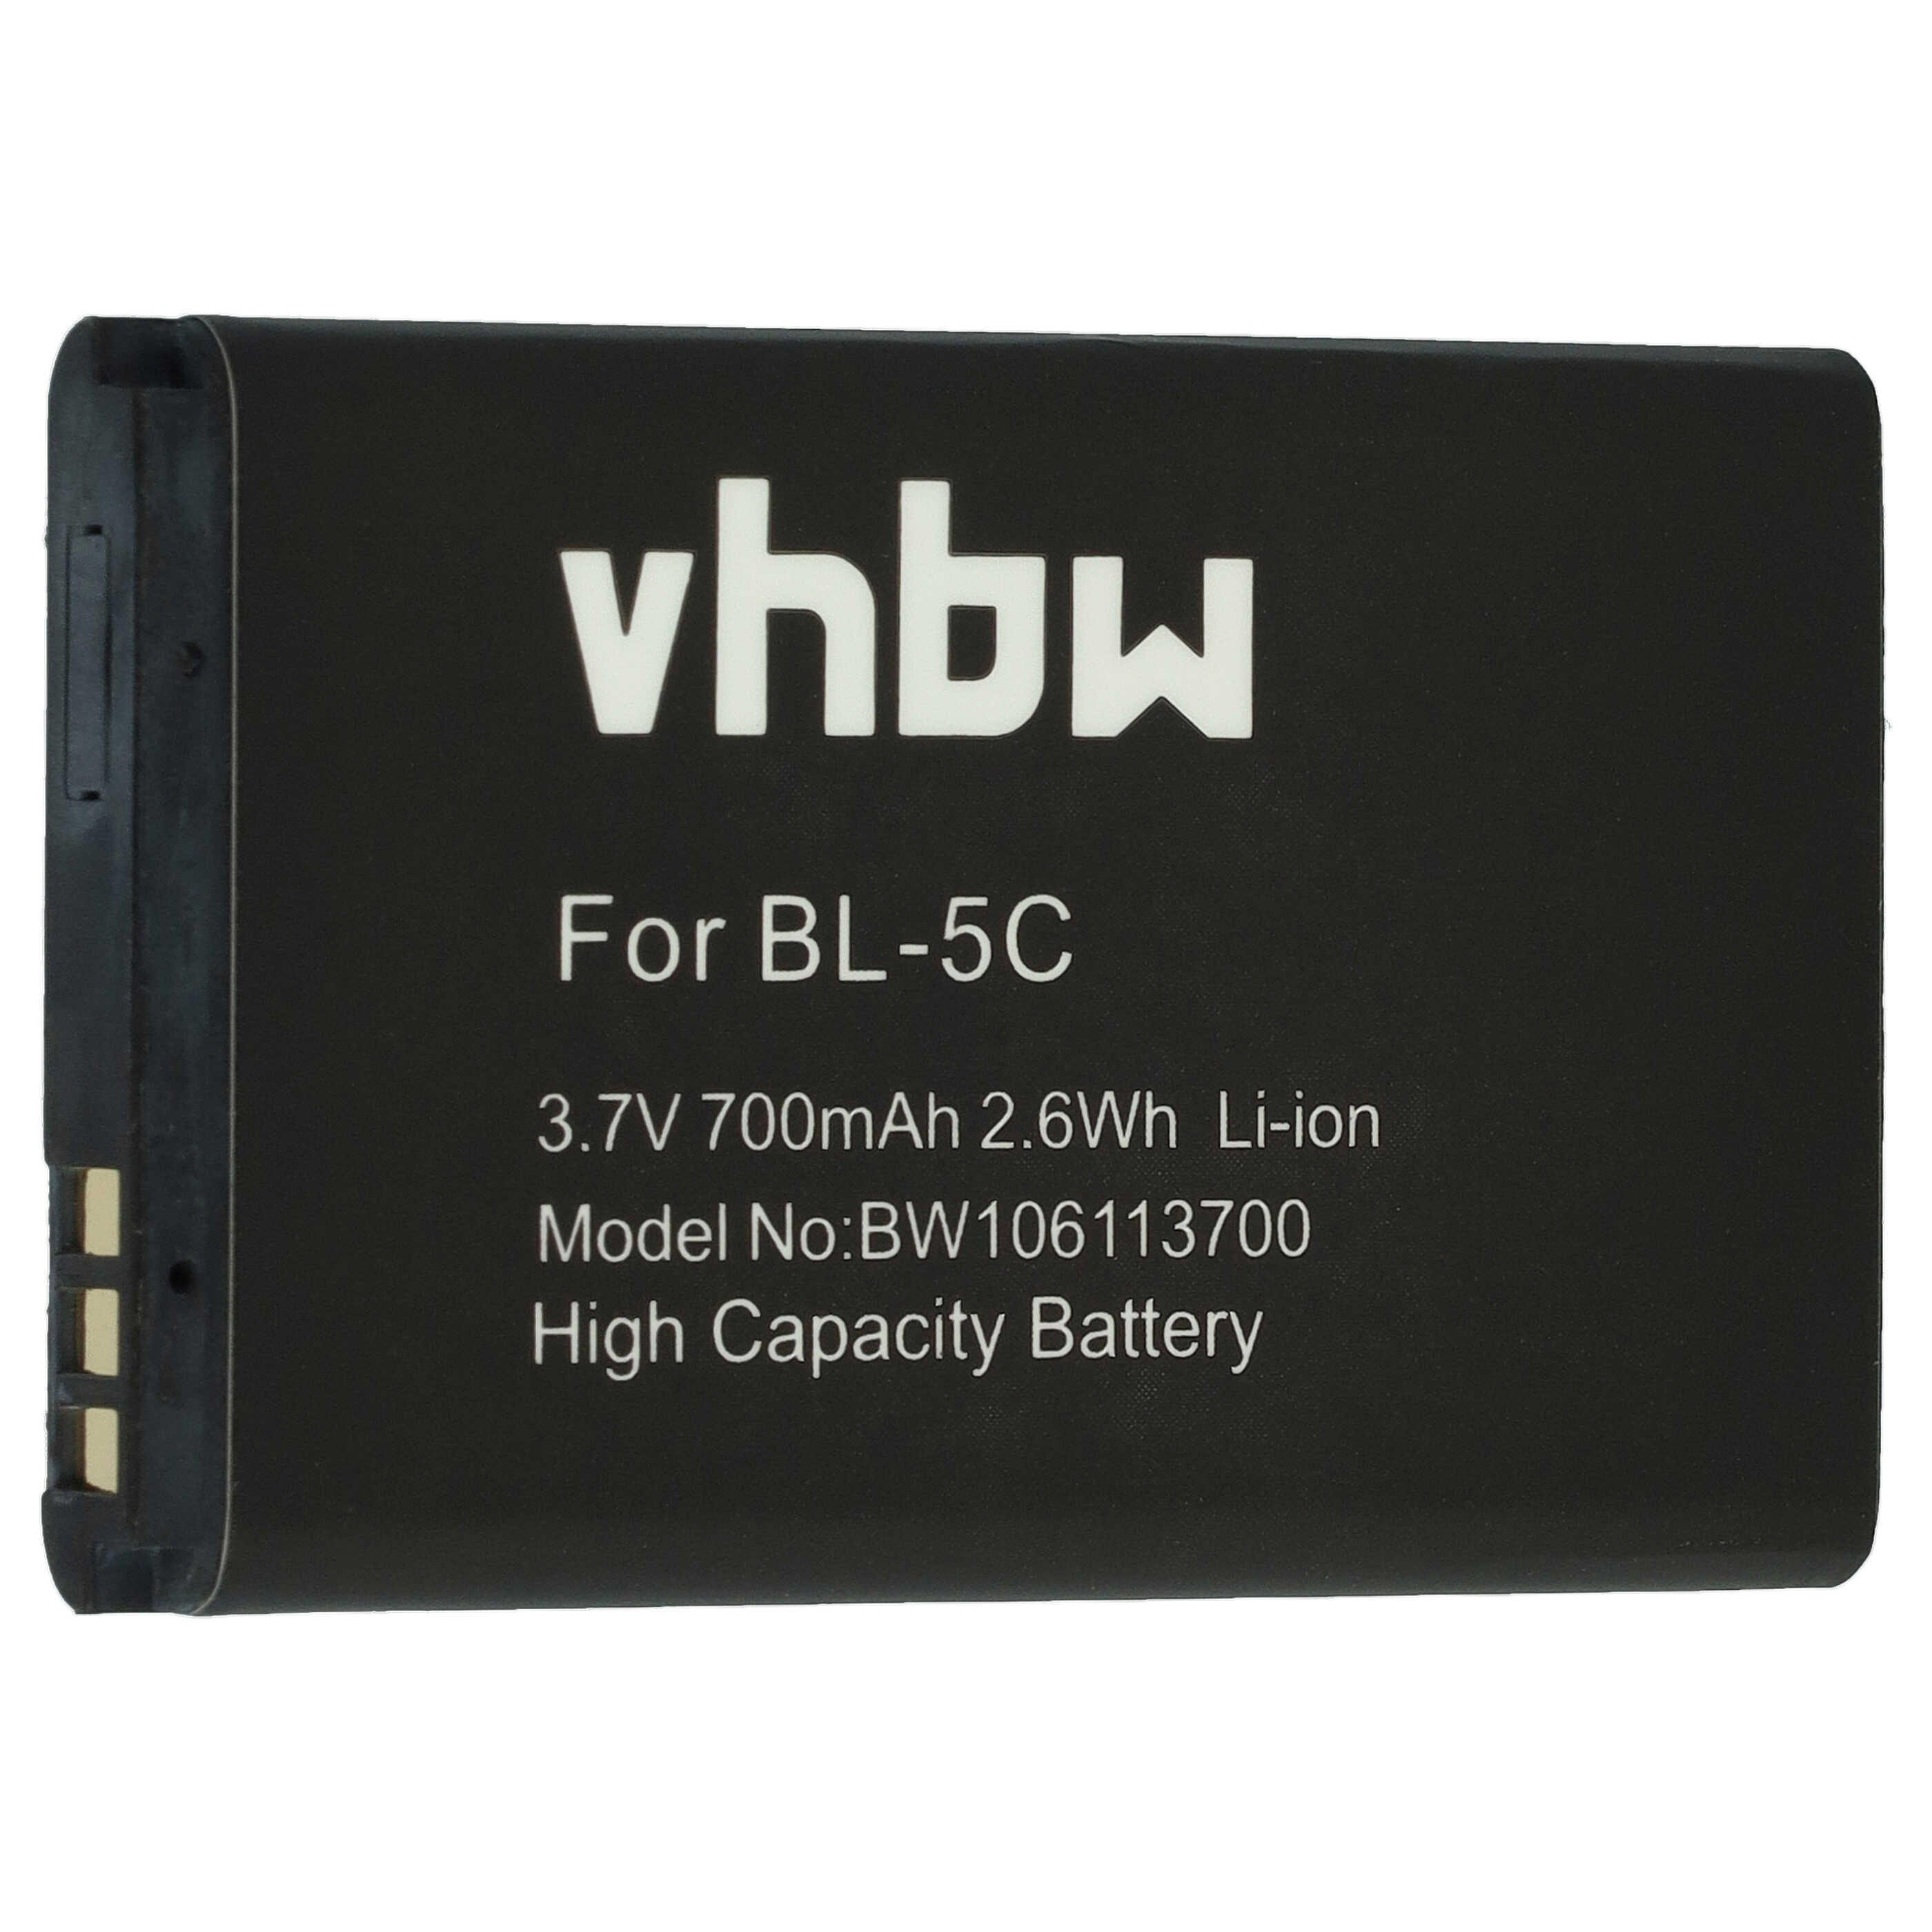 Batterie remplace Swissvoice 20405928 pour téléphone portable - 700mAh, 3,7V, Li-ion